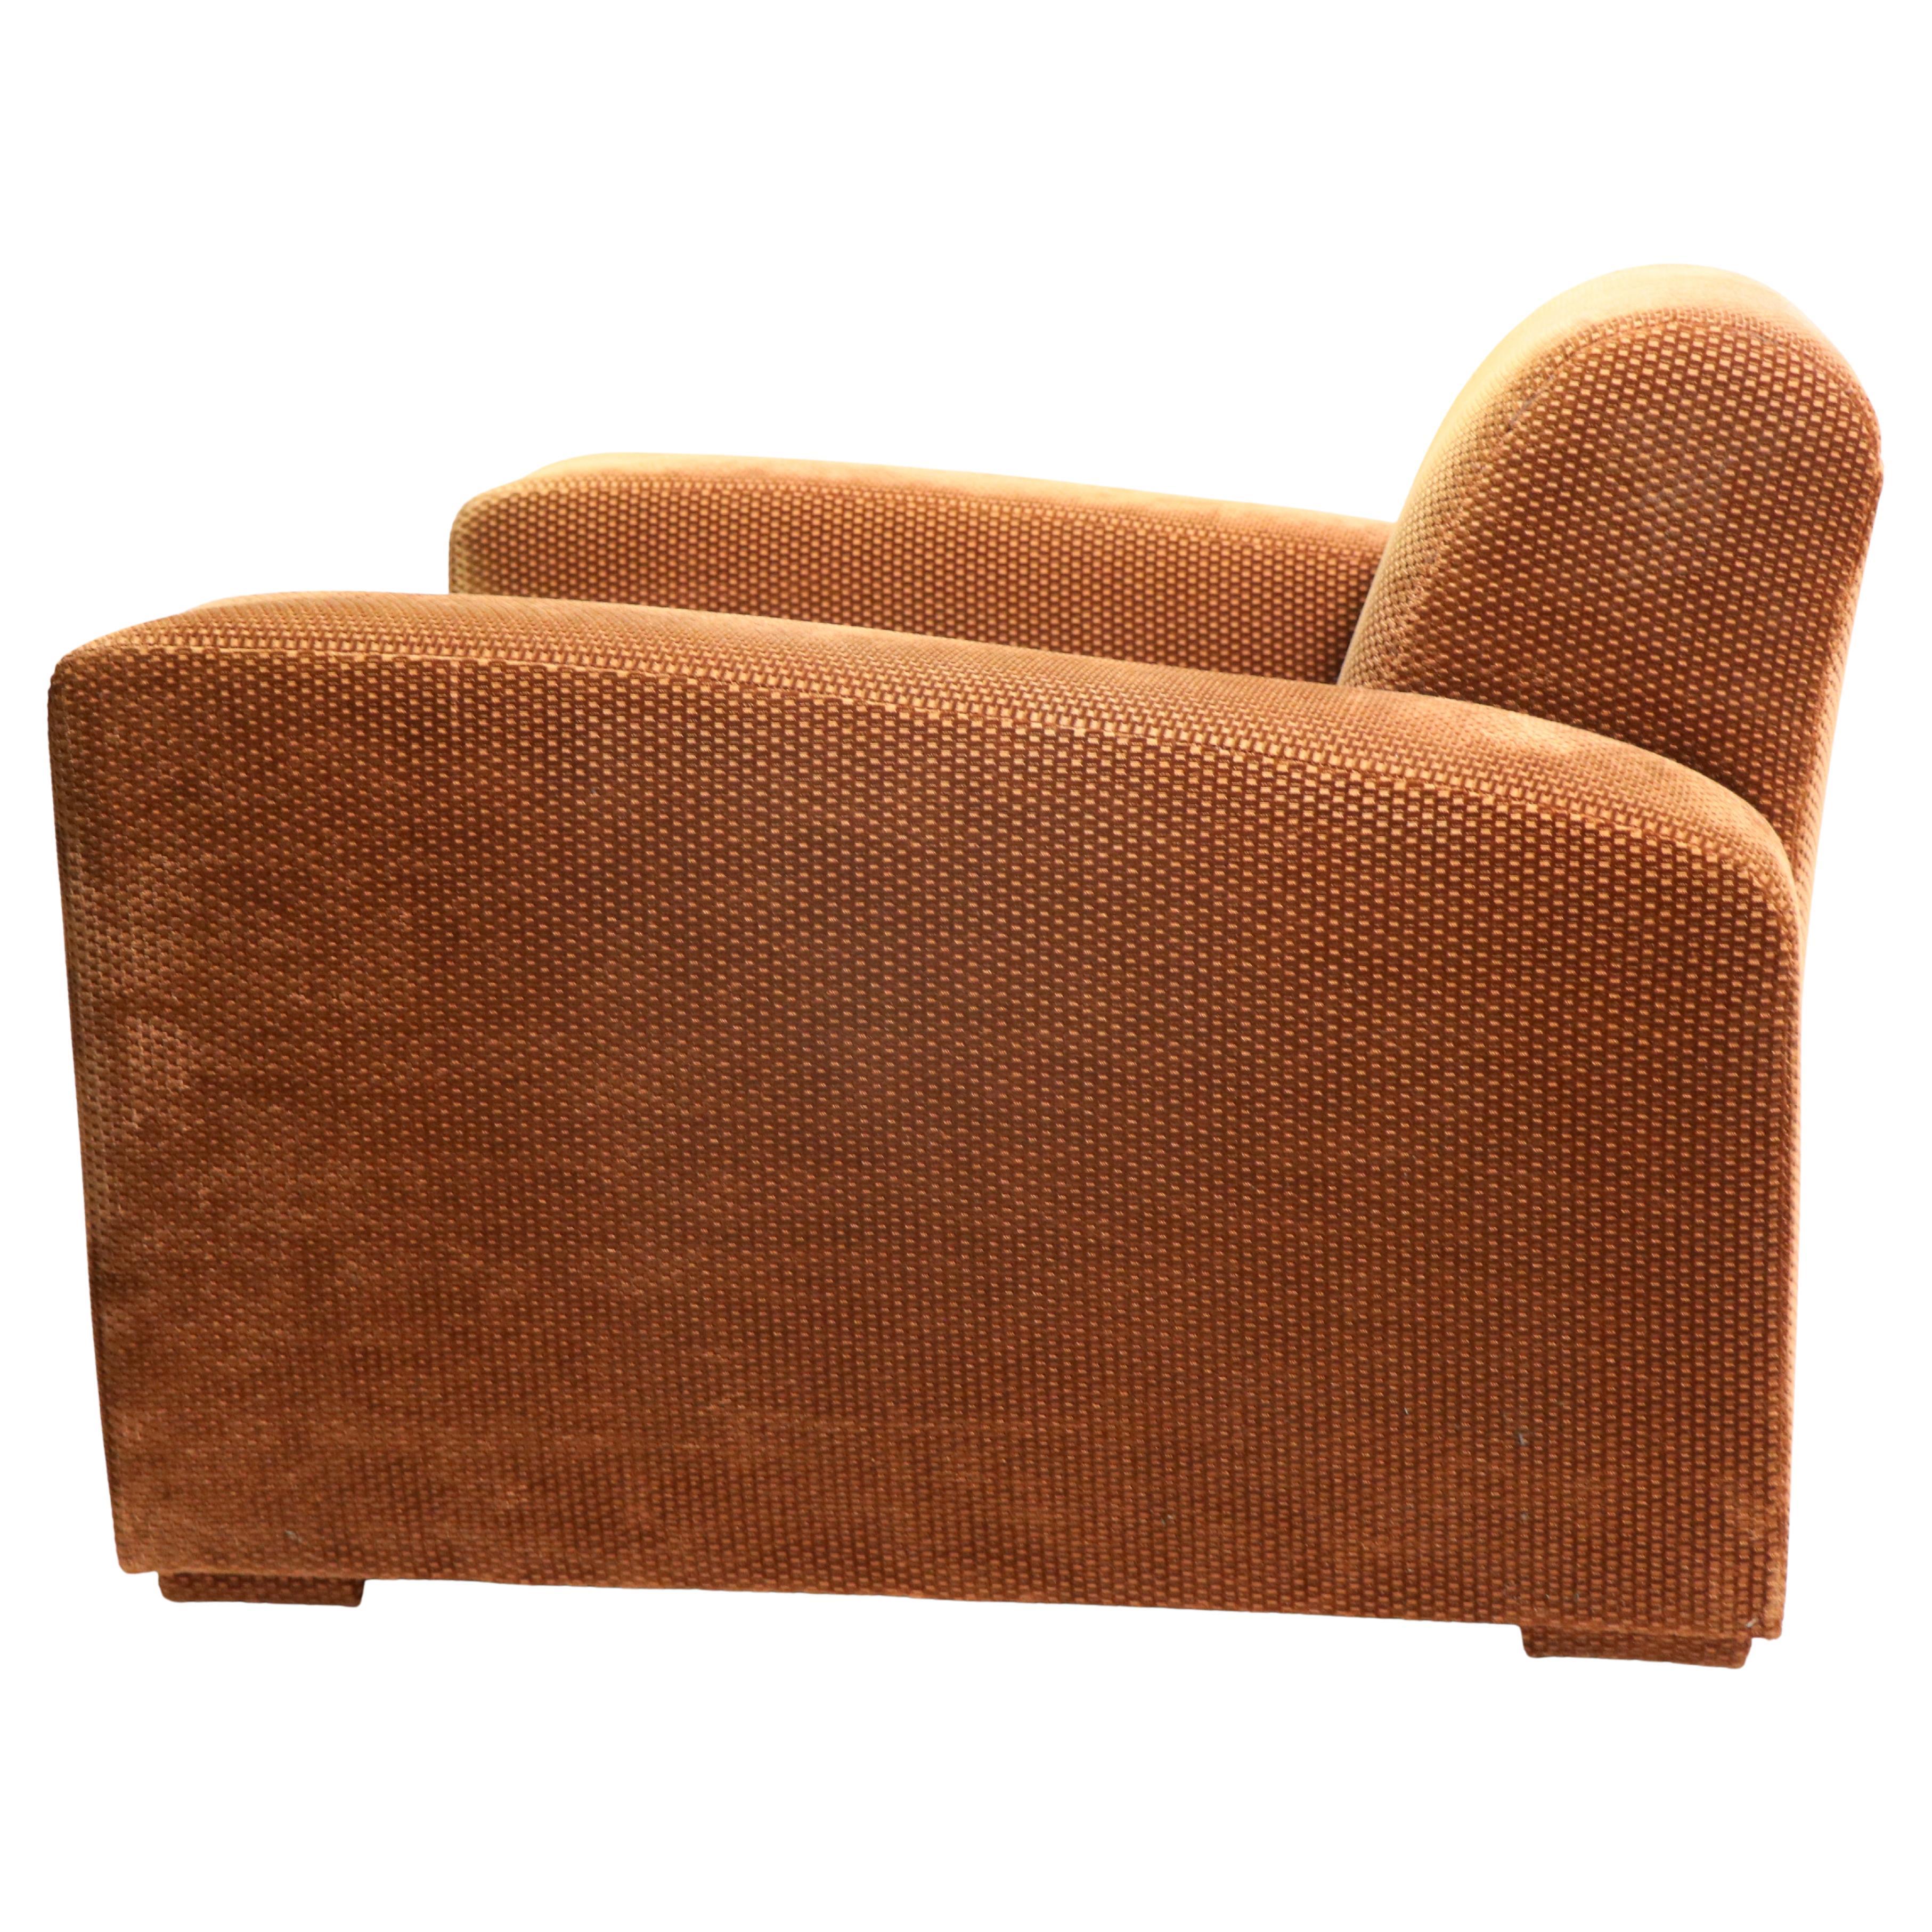 Hochwertiger Club- und Loungesessel im Stil des legendären Sessels Speed von Paul Frankl. Dieses Exemplar ist in sehr sauberem, gebrauchsfertigem Zustand, es ist modisch, schick und bequem. Die übertriebenen Art-Déco-Linien wirken auch heute noch